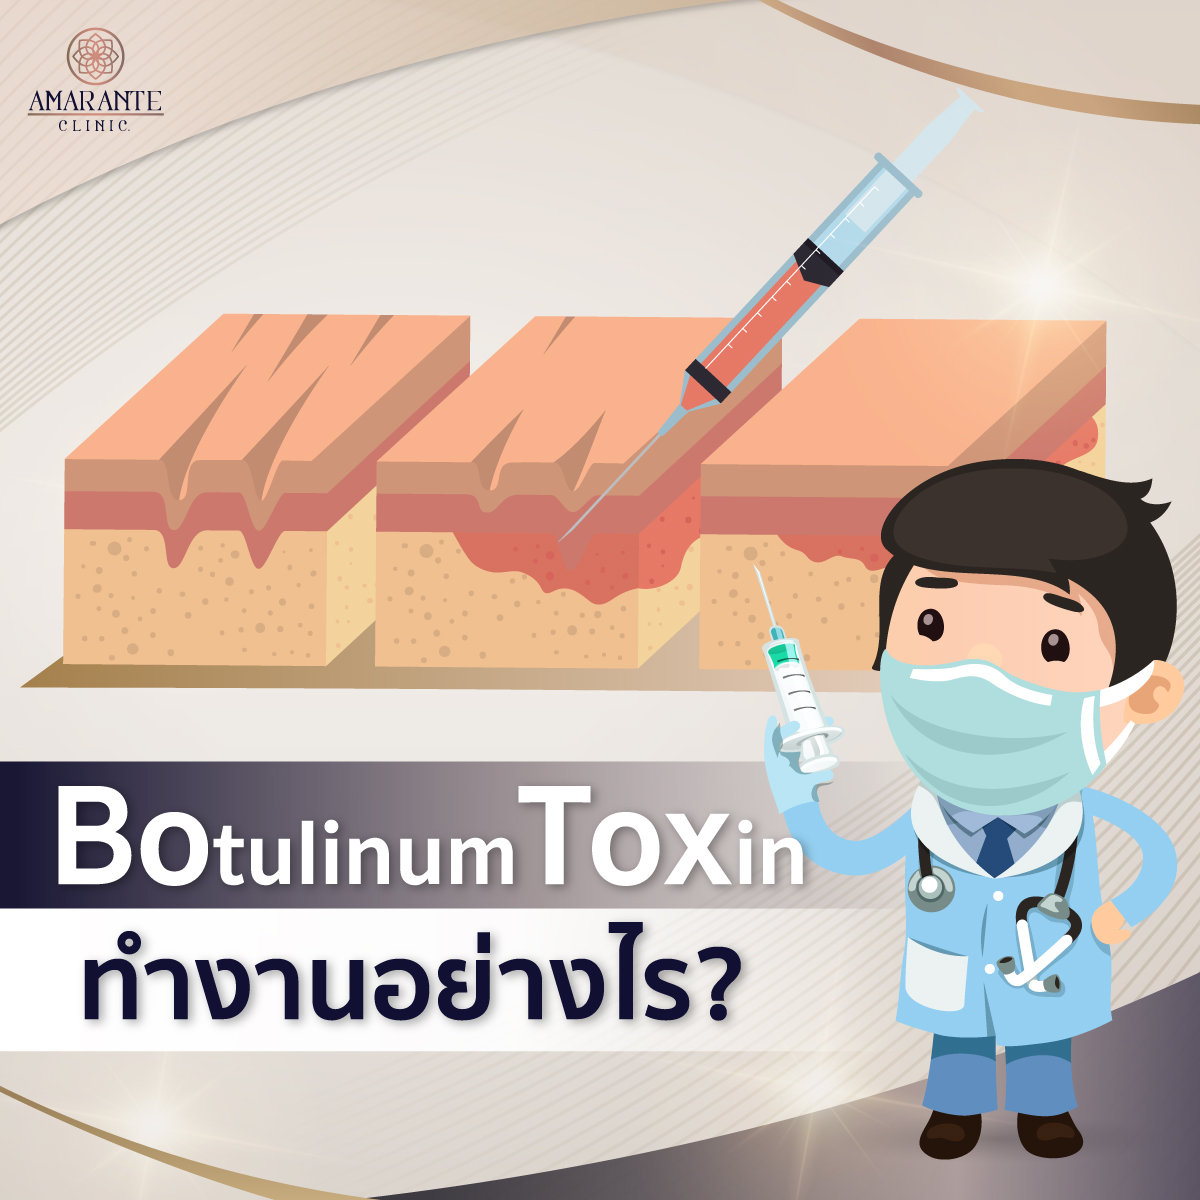 Botulinum Toxin ยกกระชับ ปรับหน้าเรียว